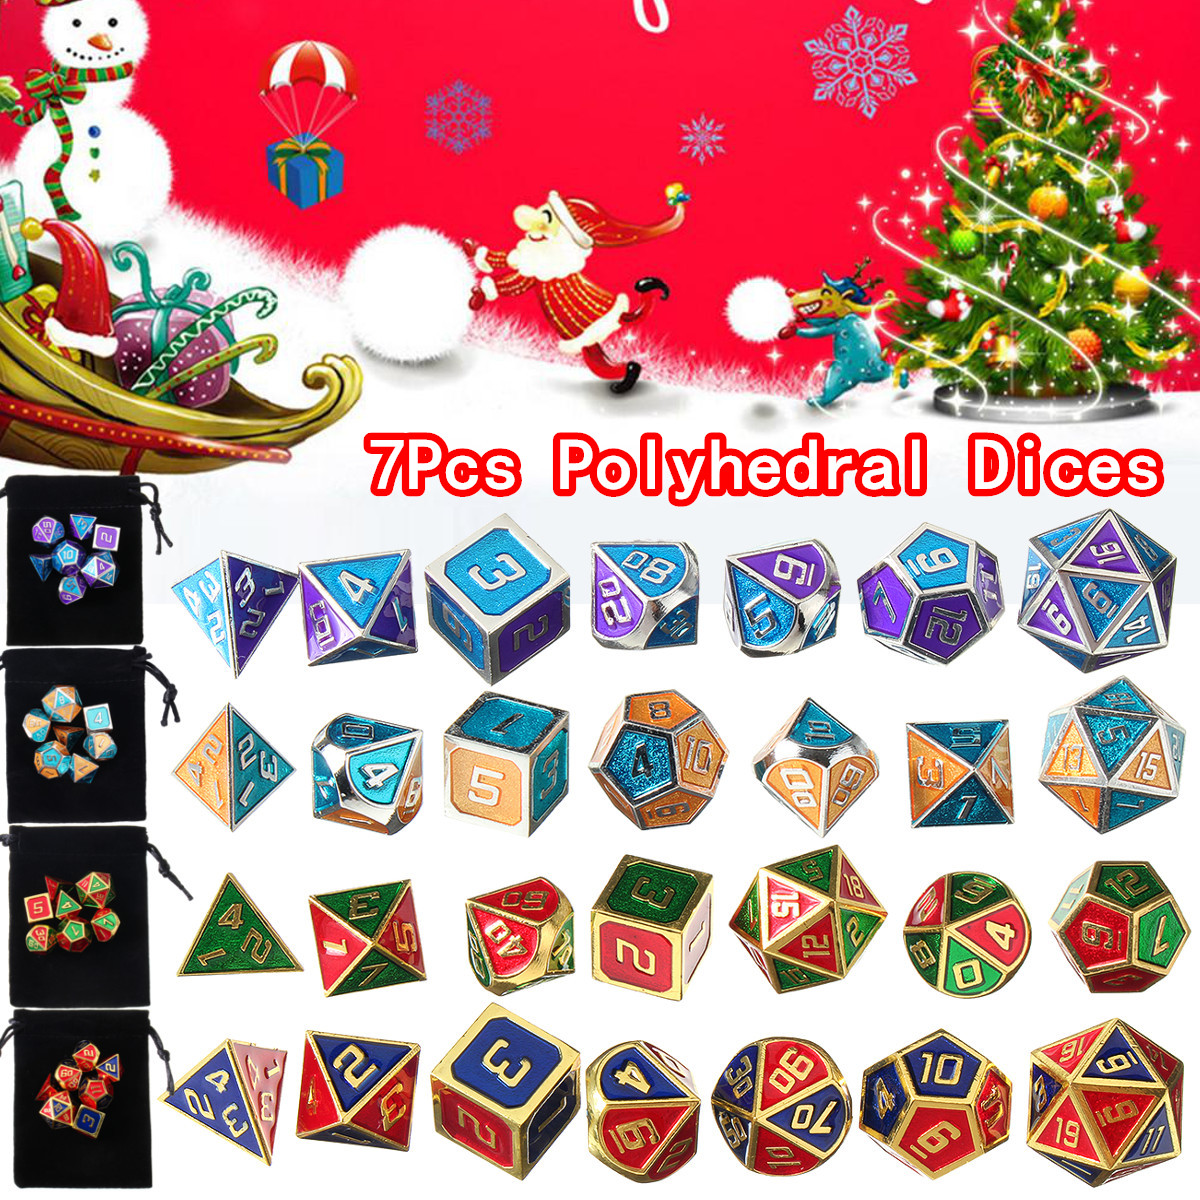 7Pcs-Polyhedral-Dices-Set-for-Dungeons-Dragons-D20-D12-D10-D8-D6-D4-Games-Storage-Pouches-Bag-1584941-1